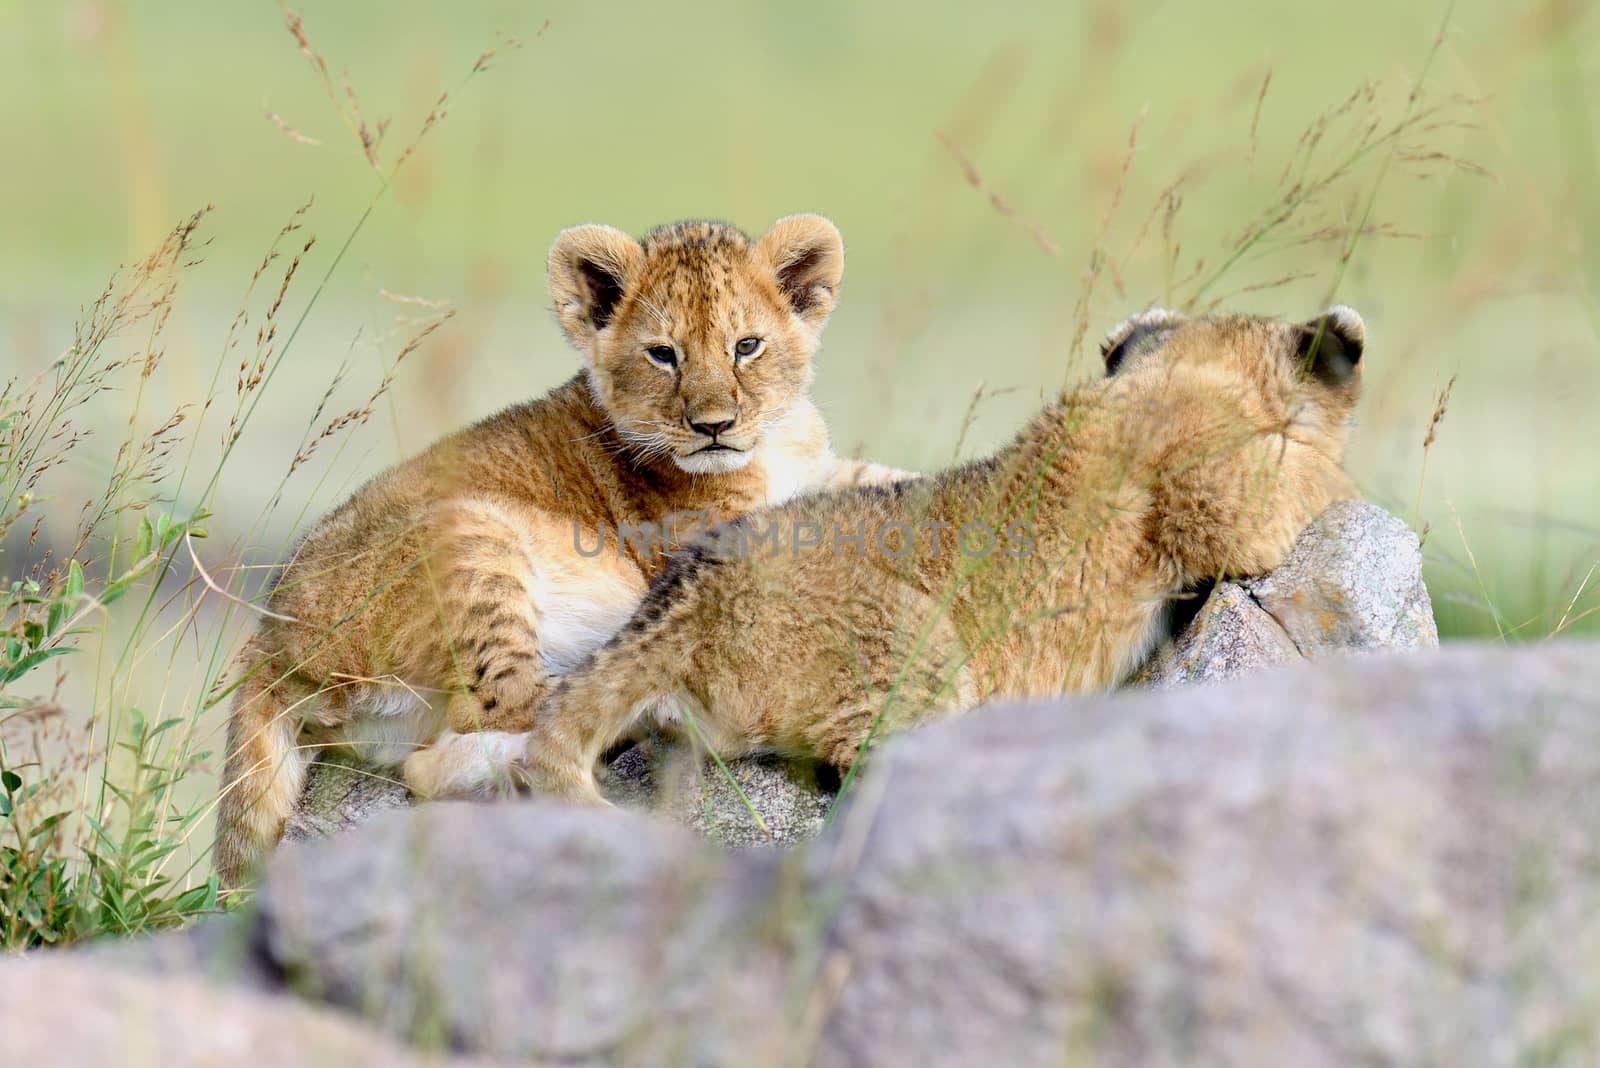 Lion cub by byrdyak